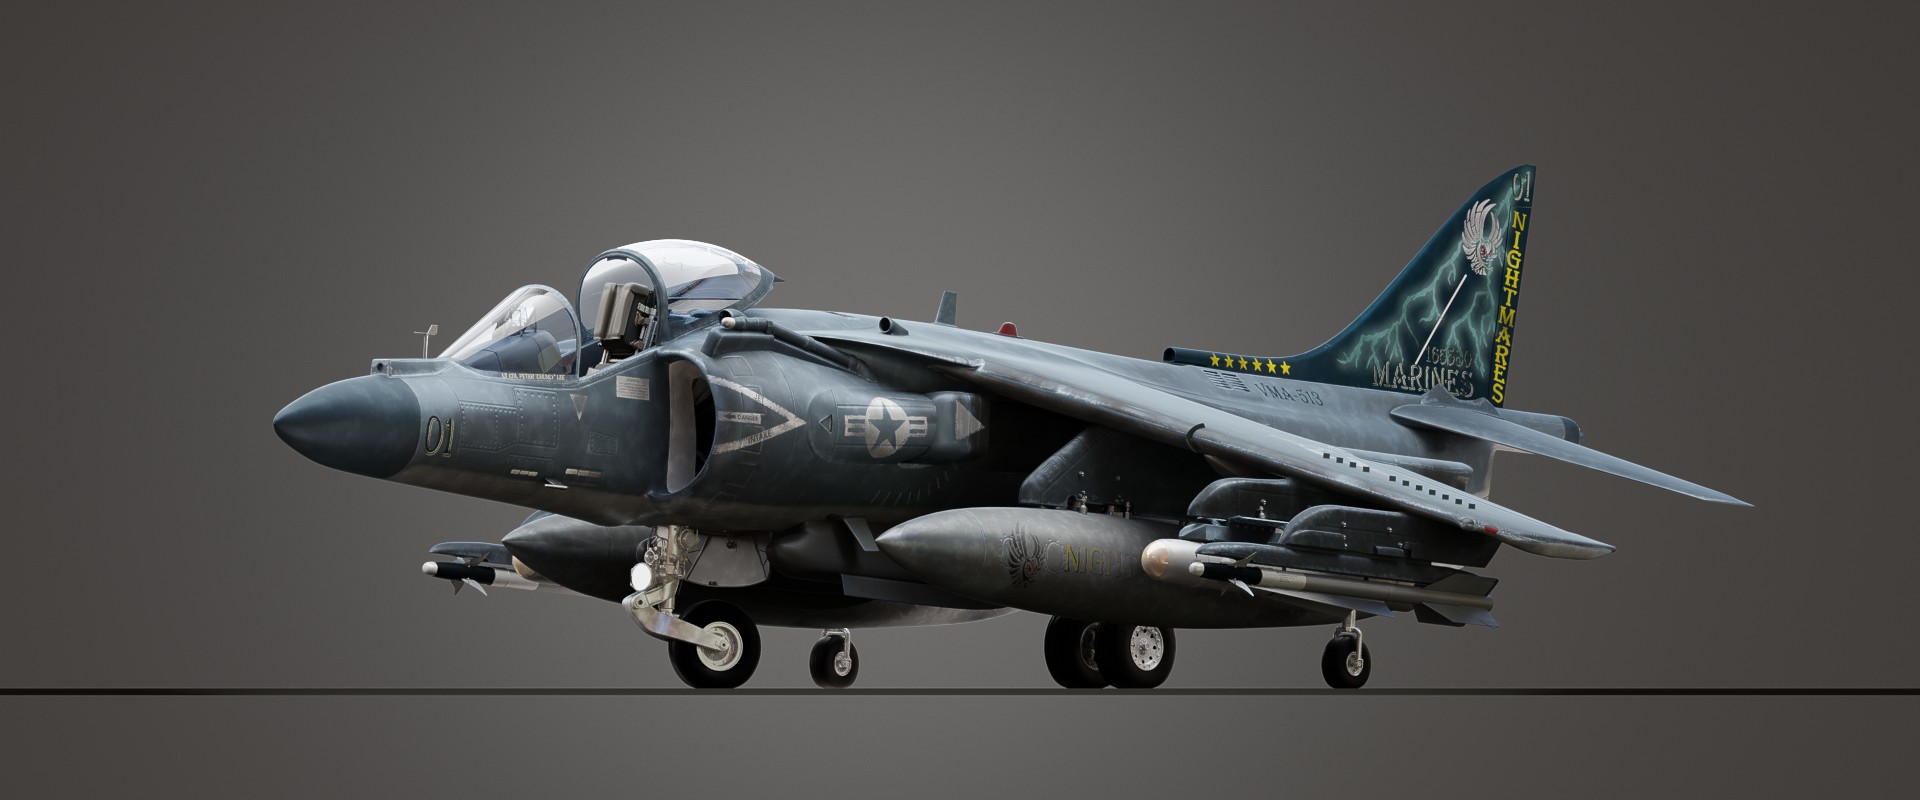 Harrier AV8b II Plus